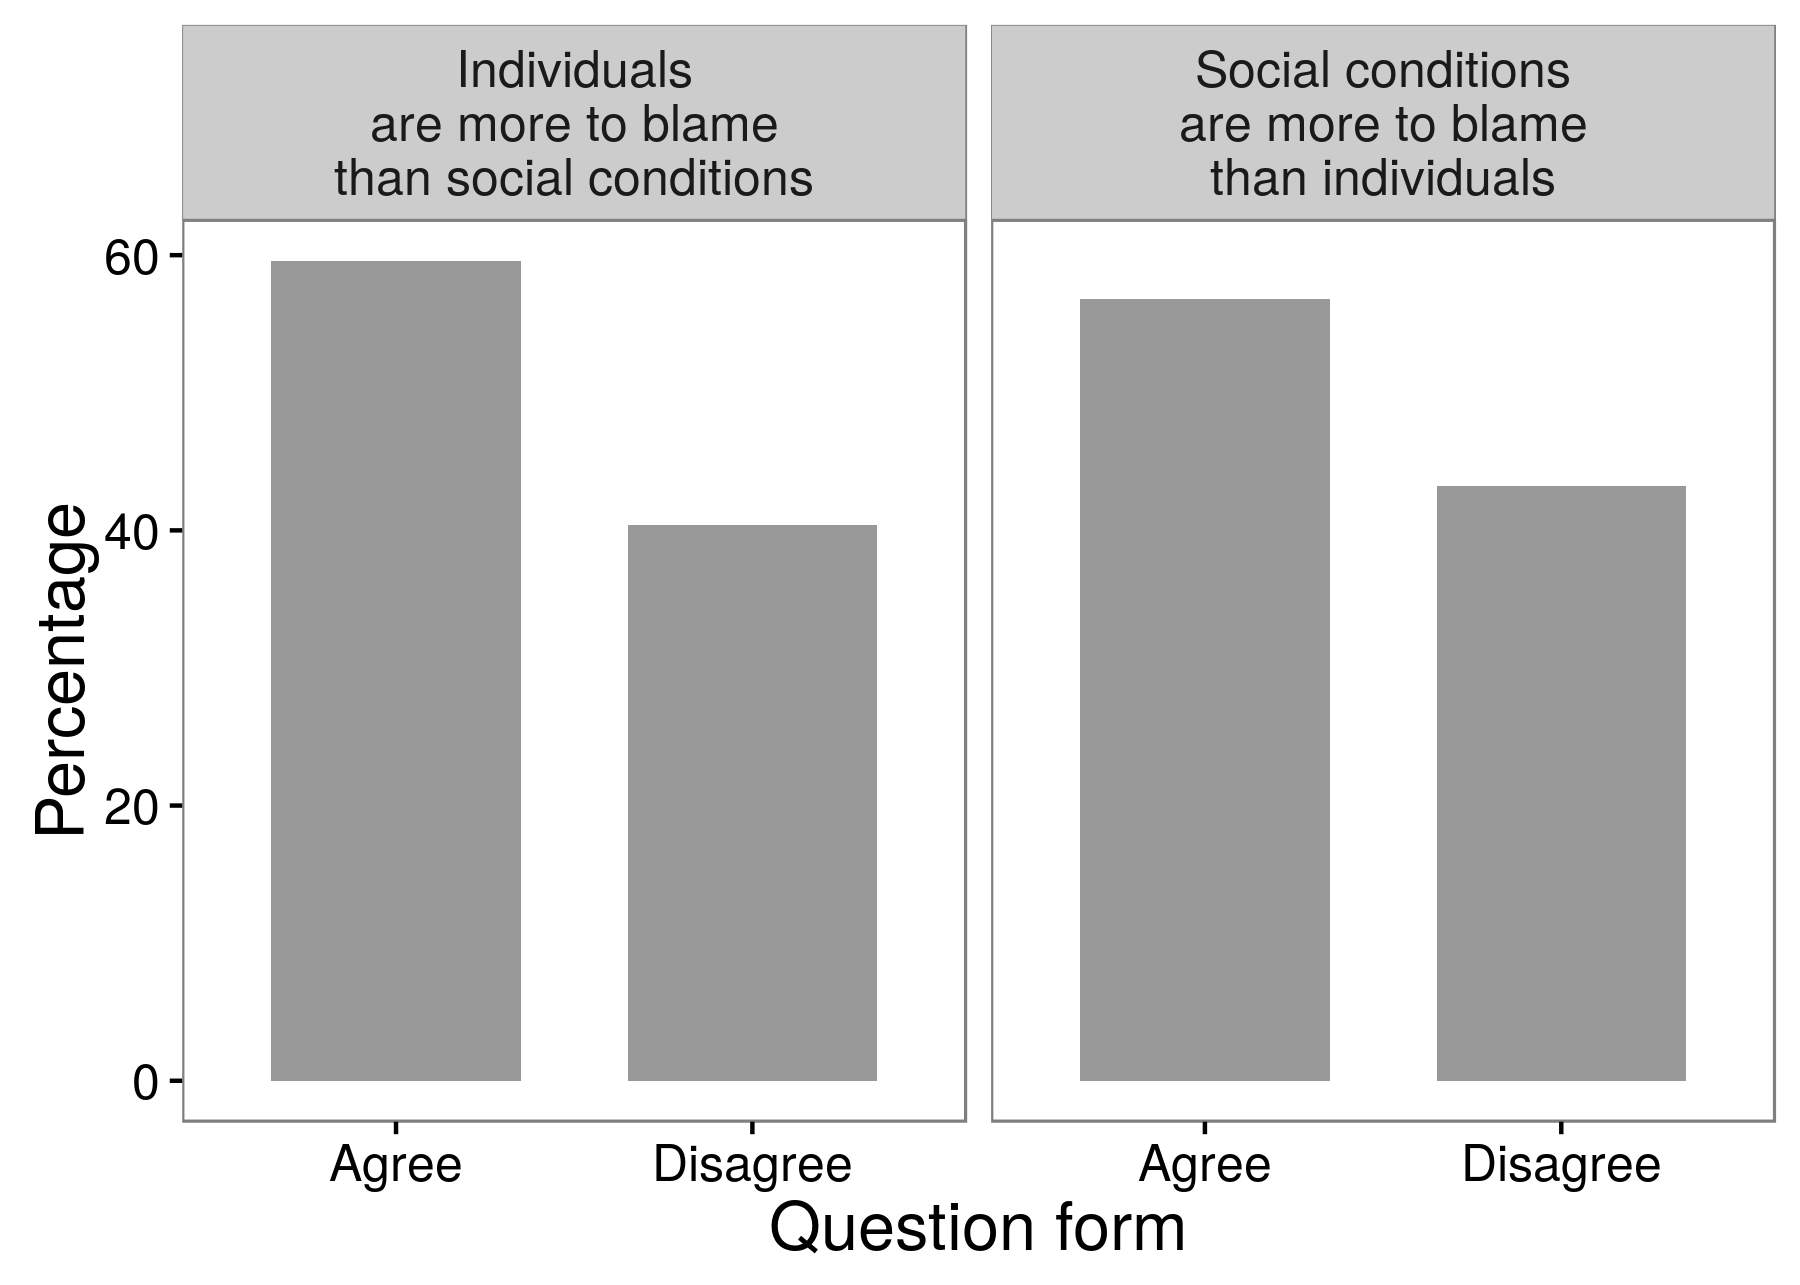 Rysunek 3.3: Wyniki eksperymentu z ankiety pokazujące, że naukowcy mogą uzyskać różne odpowiedzi w zależności od tego, jak dokładnie zadali pytanie. Większość respondentów zgodziła się, że osoby są bardziej winne niż warunki społeczne za przestępstwa i bezprawie. I większość respondentów zgodziła się z przeciwną: że warunki społeczne są bardziej odpowiedzialne niż jednostki. Adaptacja z Schumana i Pressera (1996), tabela 8.1.